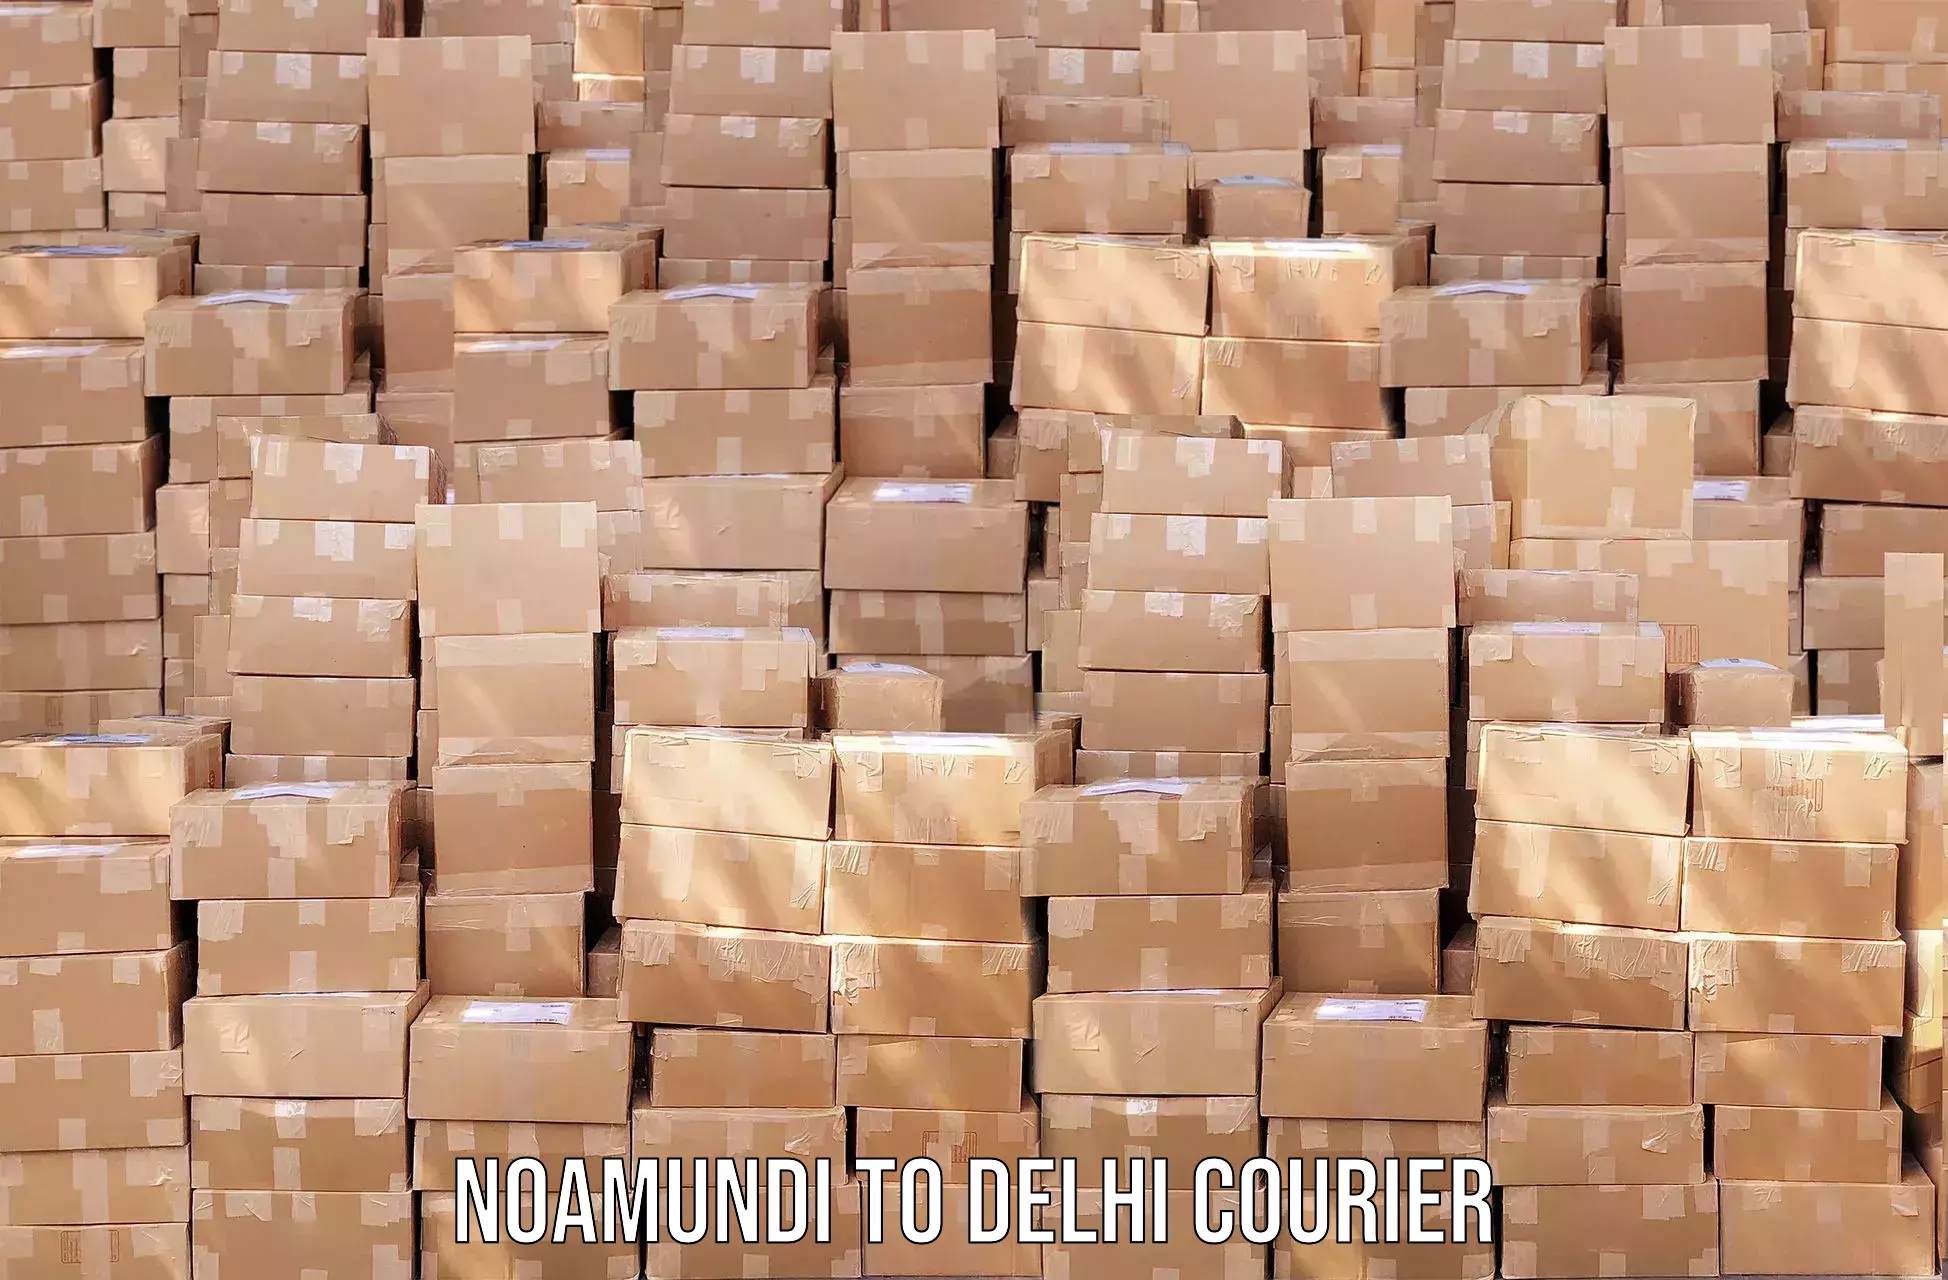 Courier service booking Noamundi to Delhi